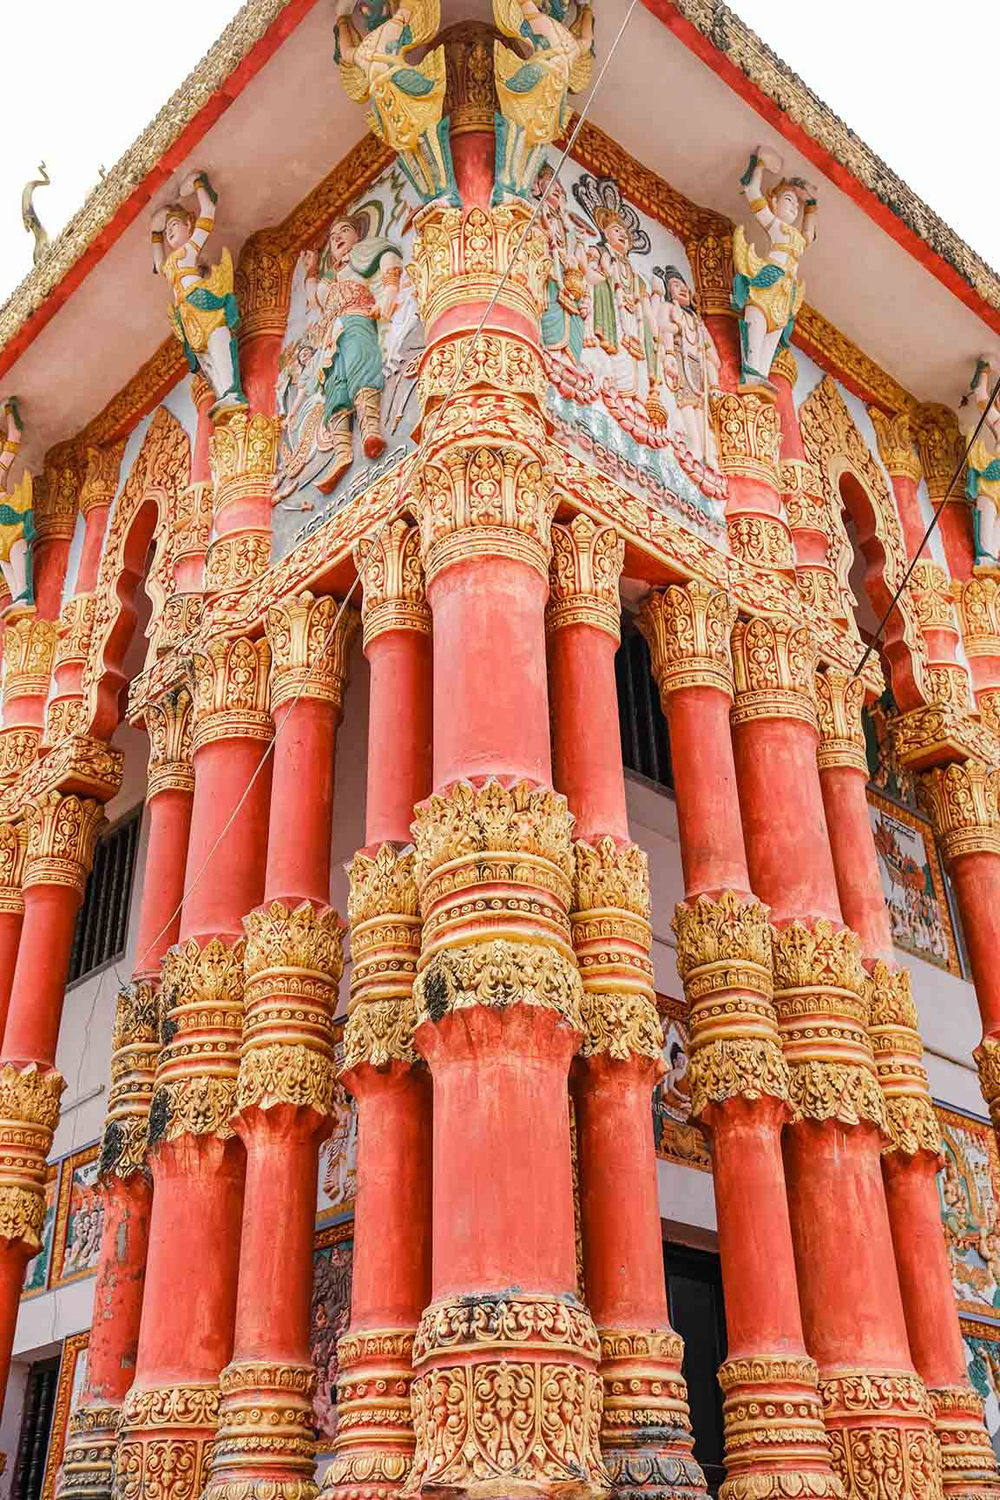 Giữa các hàng trụ cột chạm khắc nhiều bức phù điêu mô tả sống động các câu chuyện, điển tích về cuộc đời Đức Phật và giáo lý nhà Phật. Được biết, các nghệ nhân phải mất khoảng 4 năm mới hoàn tất phần họa tiết, hoa văn trang trí của toàn bộ ngôi chùa.